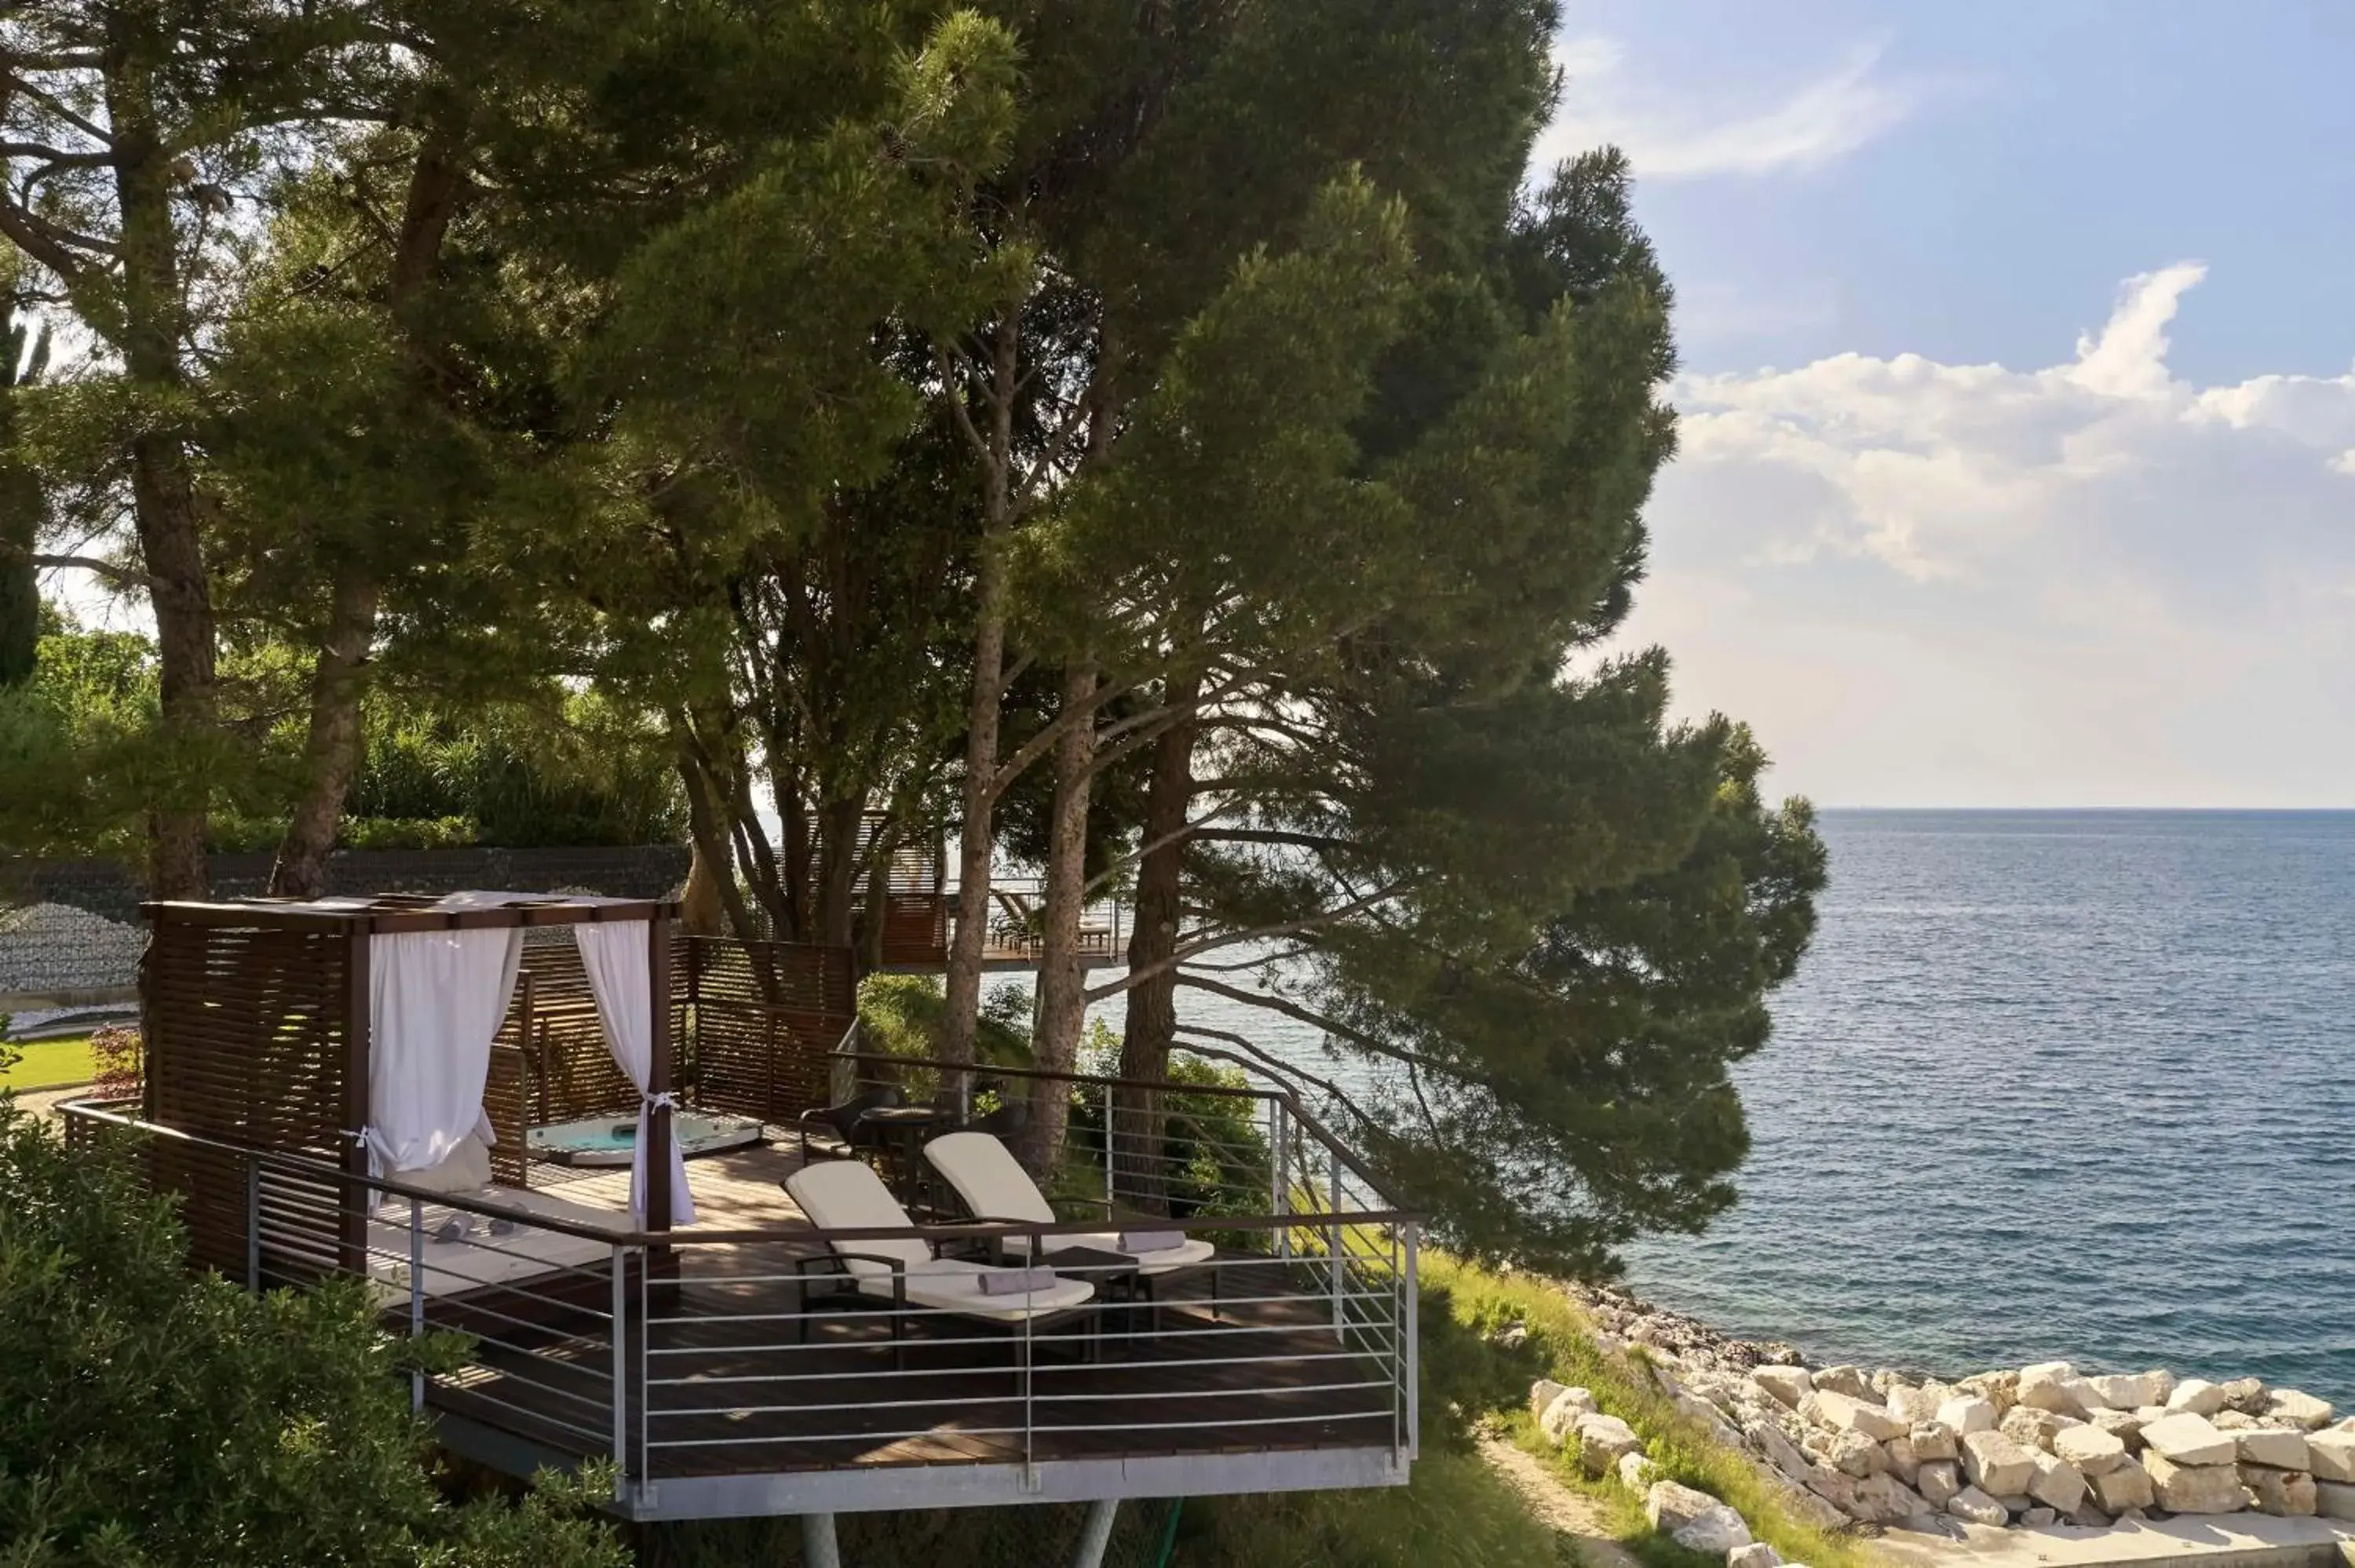 Beach in Kempinski Hotel Adriatic Istria Croatia